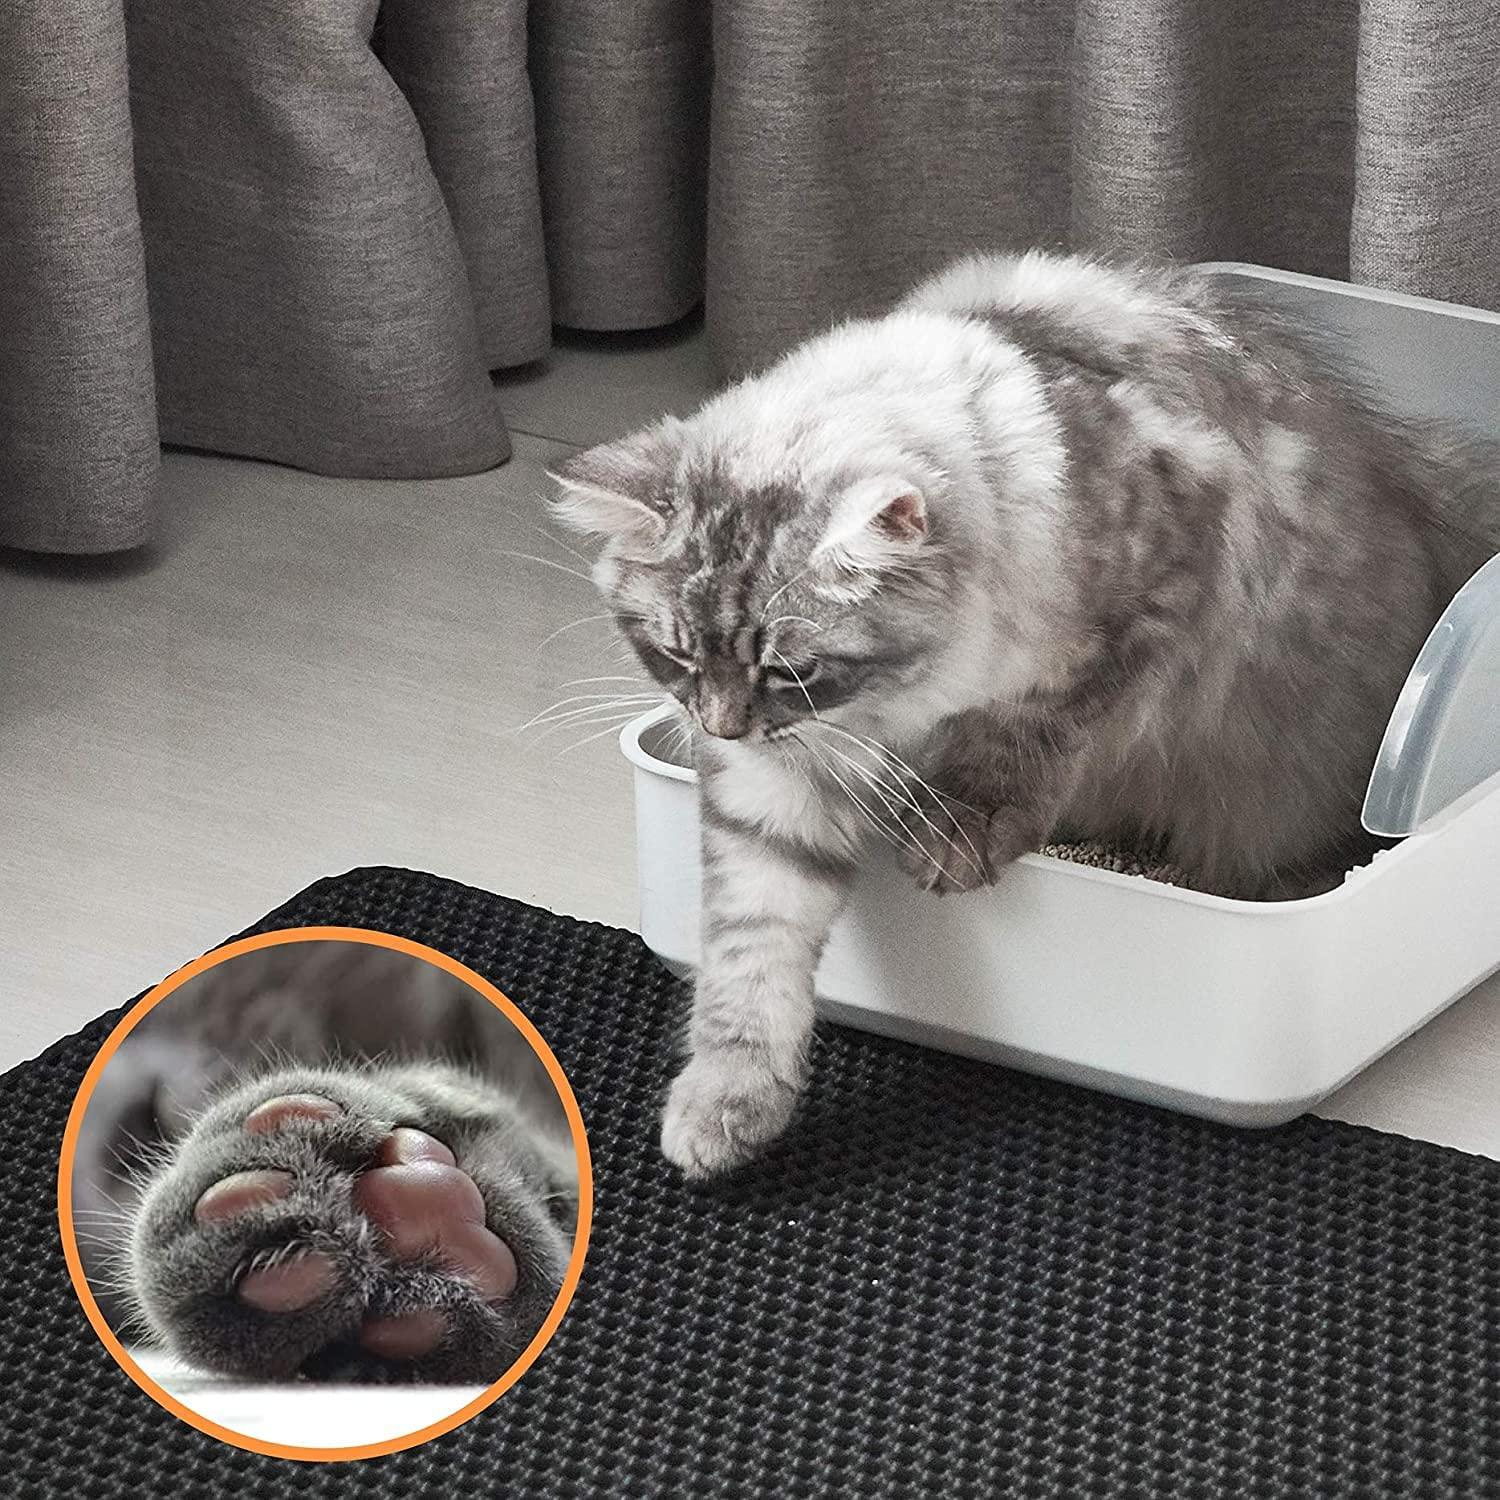 Conlun Cat Litter Mat Litter Box Mat Cat Litter Trapping Mat